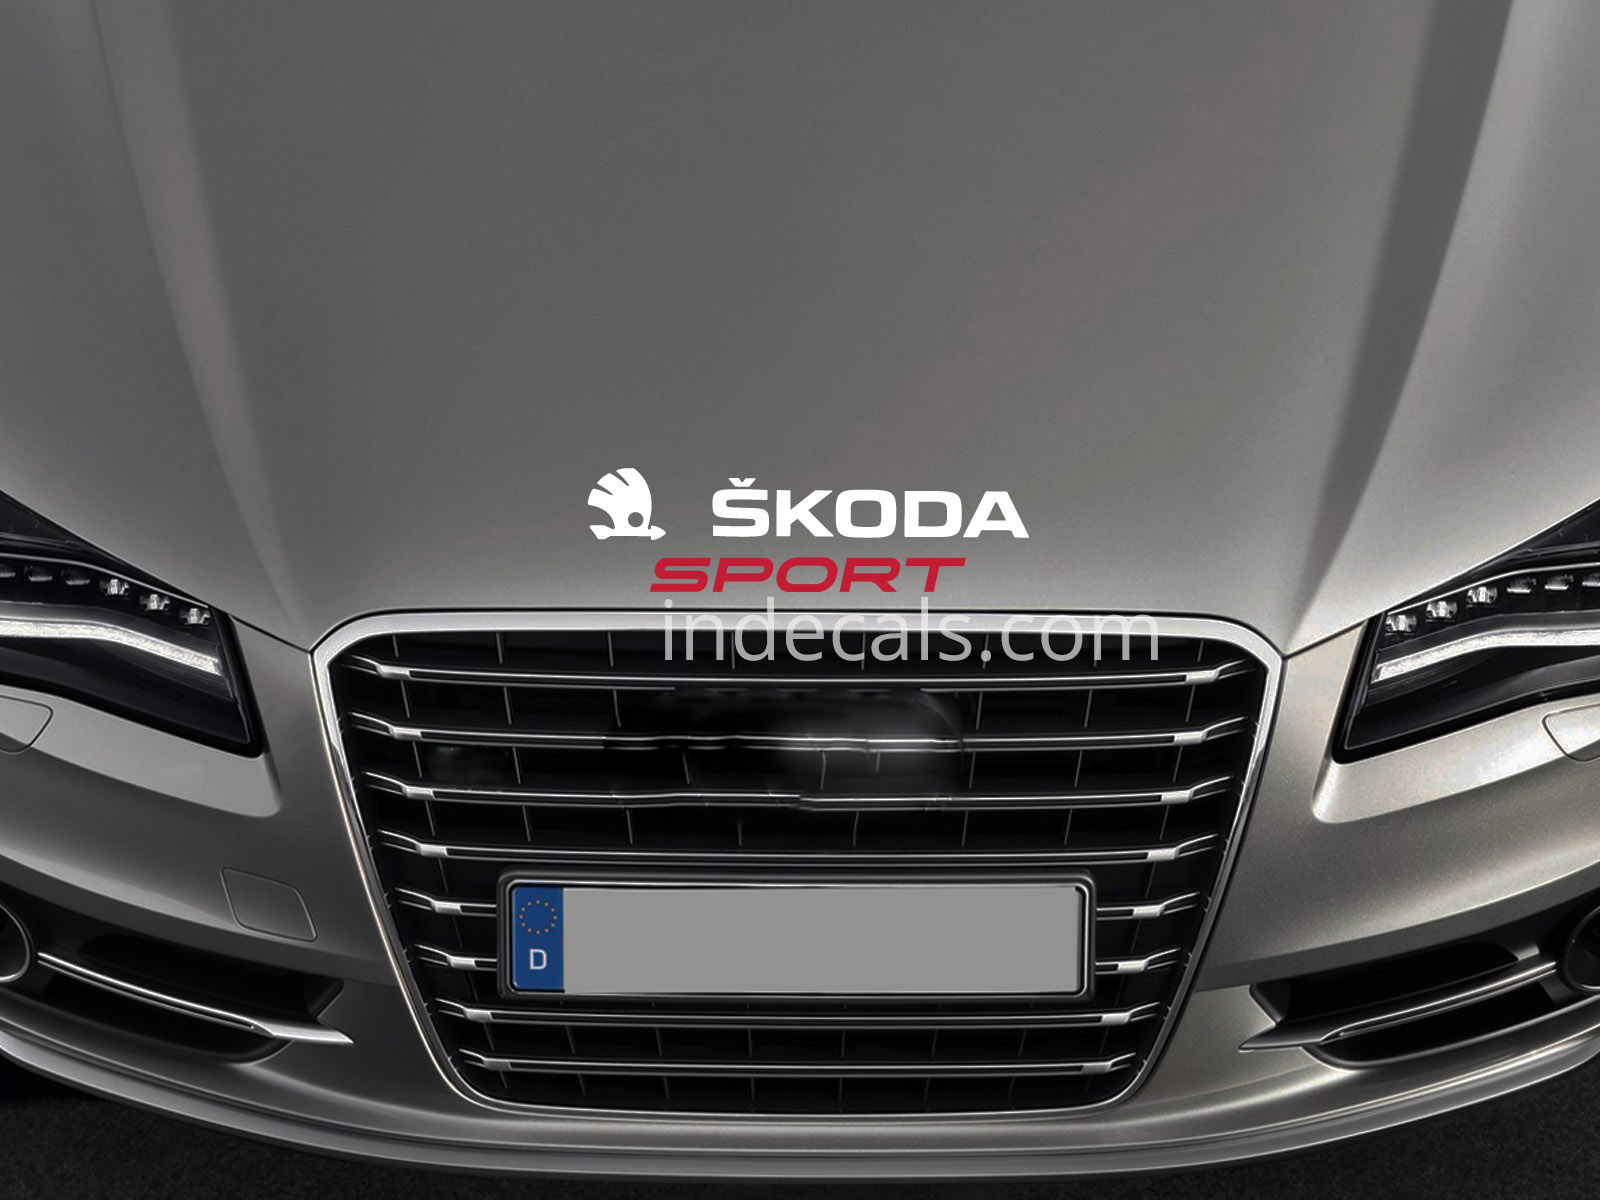 1 x Skoda Sport Sticker for Bonnet - White & Red